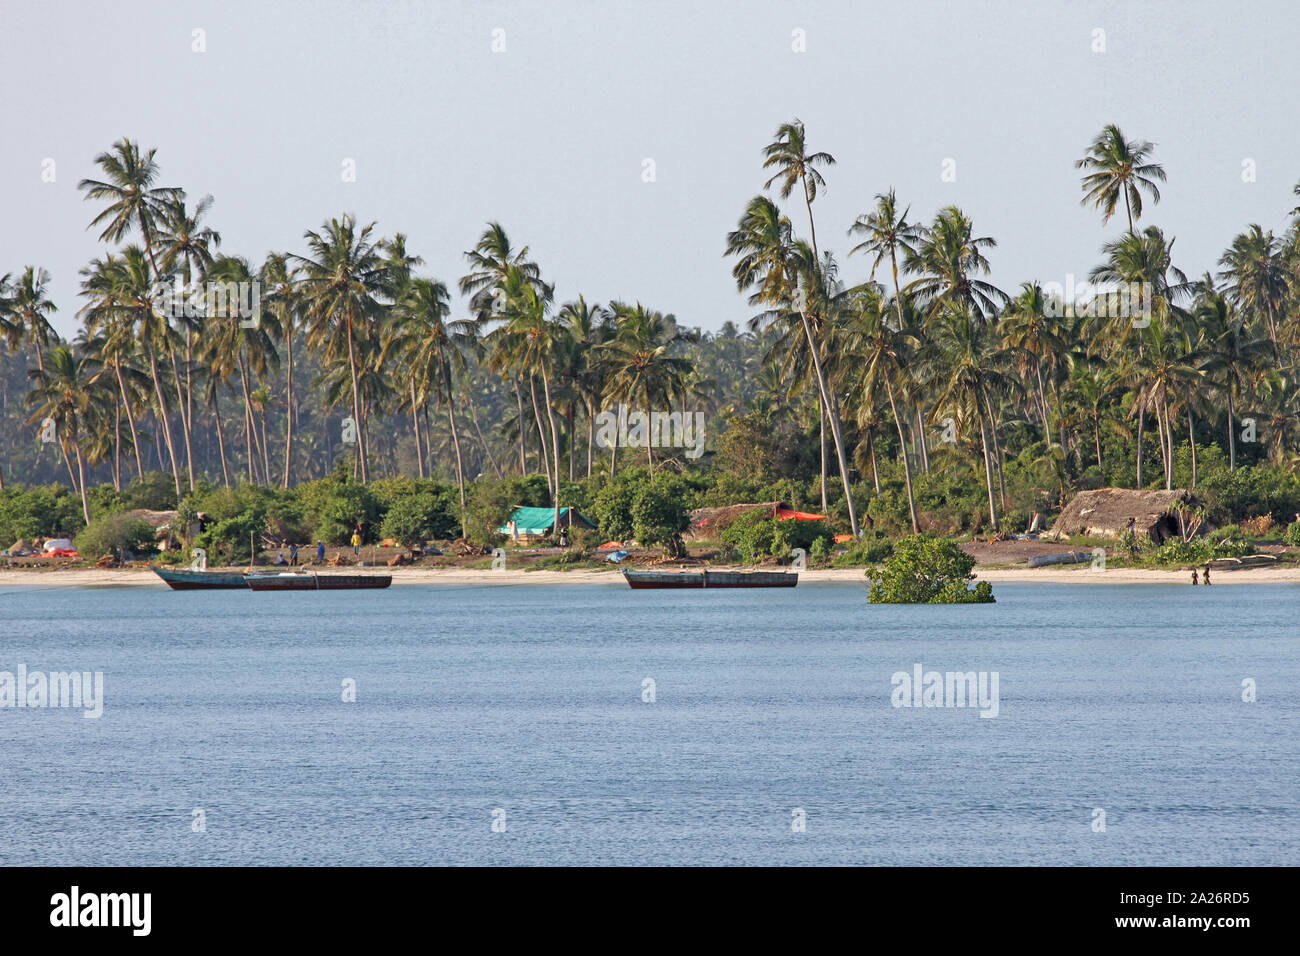 Villaggio di pescatori sulla spiaggia e palme lungo la costa orientale di Zanzibar, isola di Unguja, Tanzania. Foto Stock